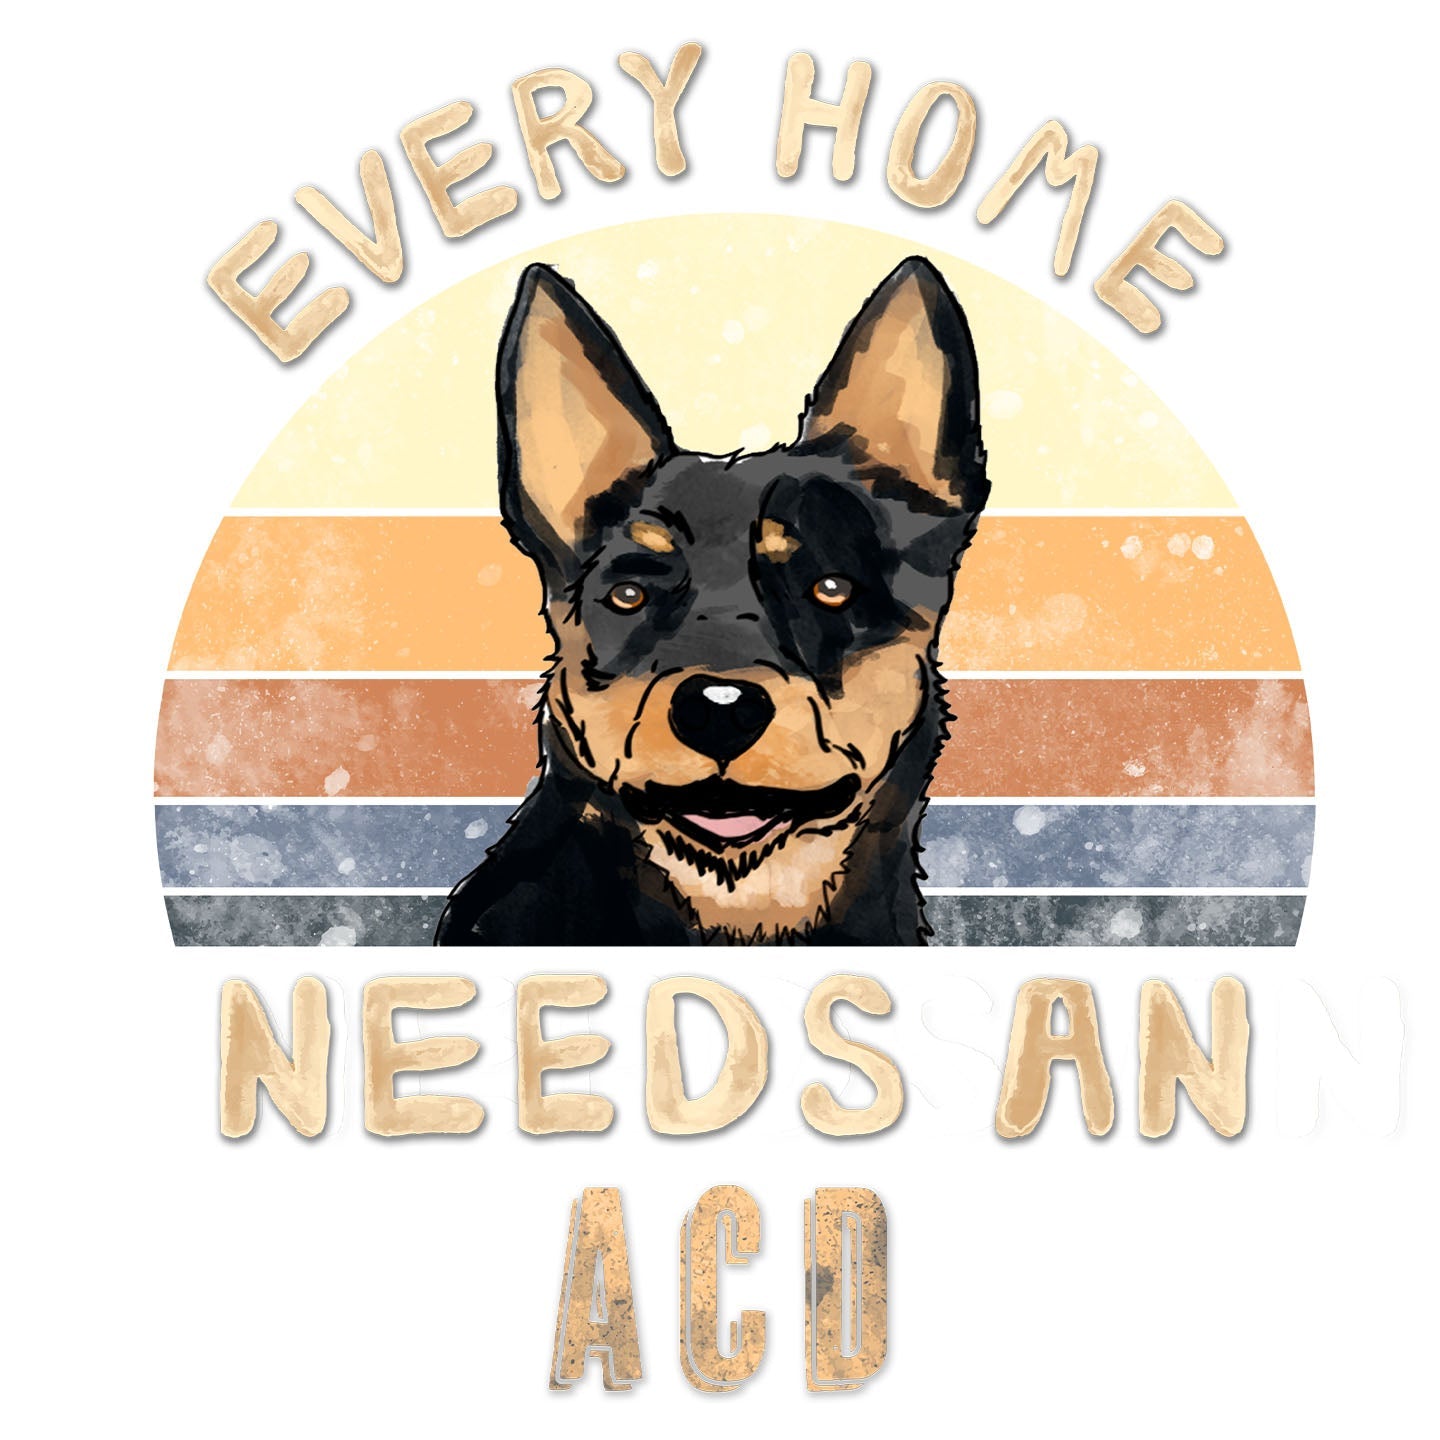 Every Home Needs a Australian Cattle Dog - Women's V-Neck T-Shirt